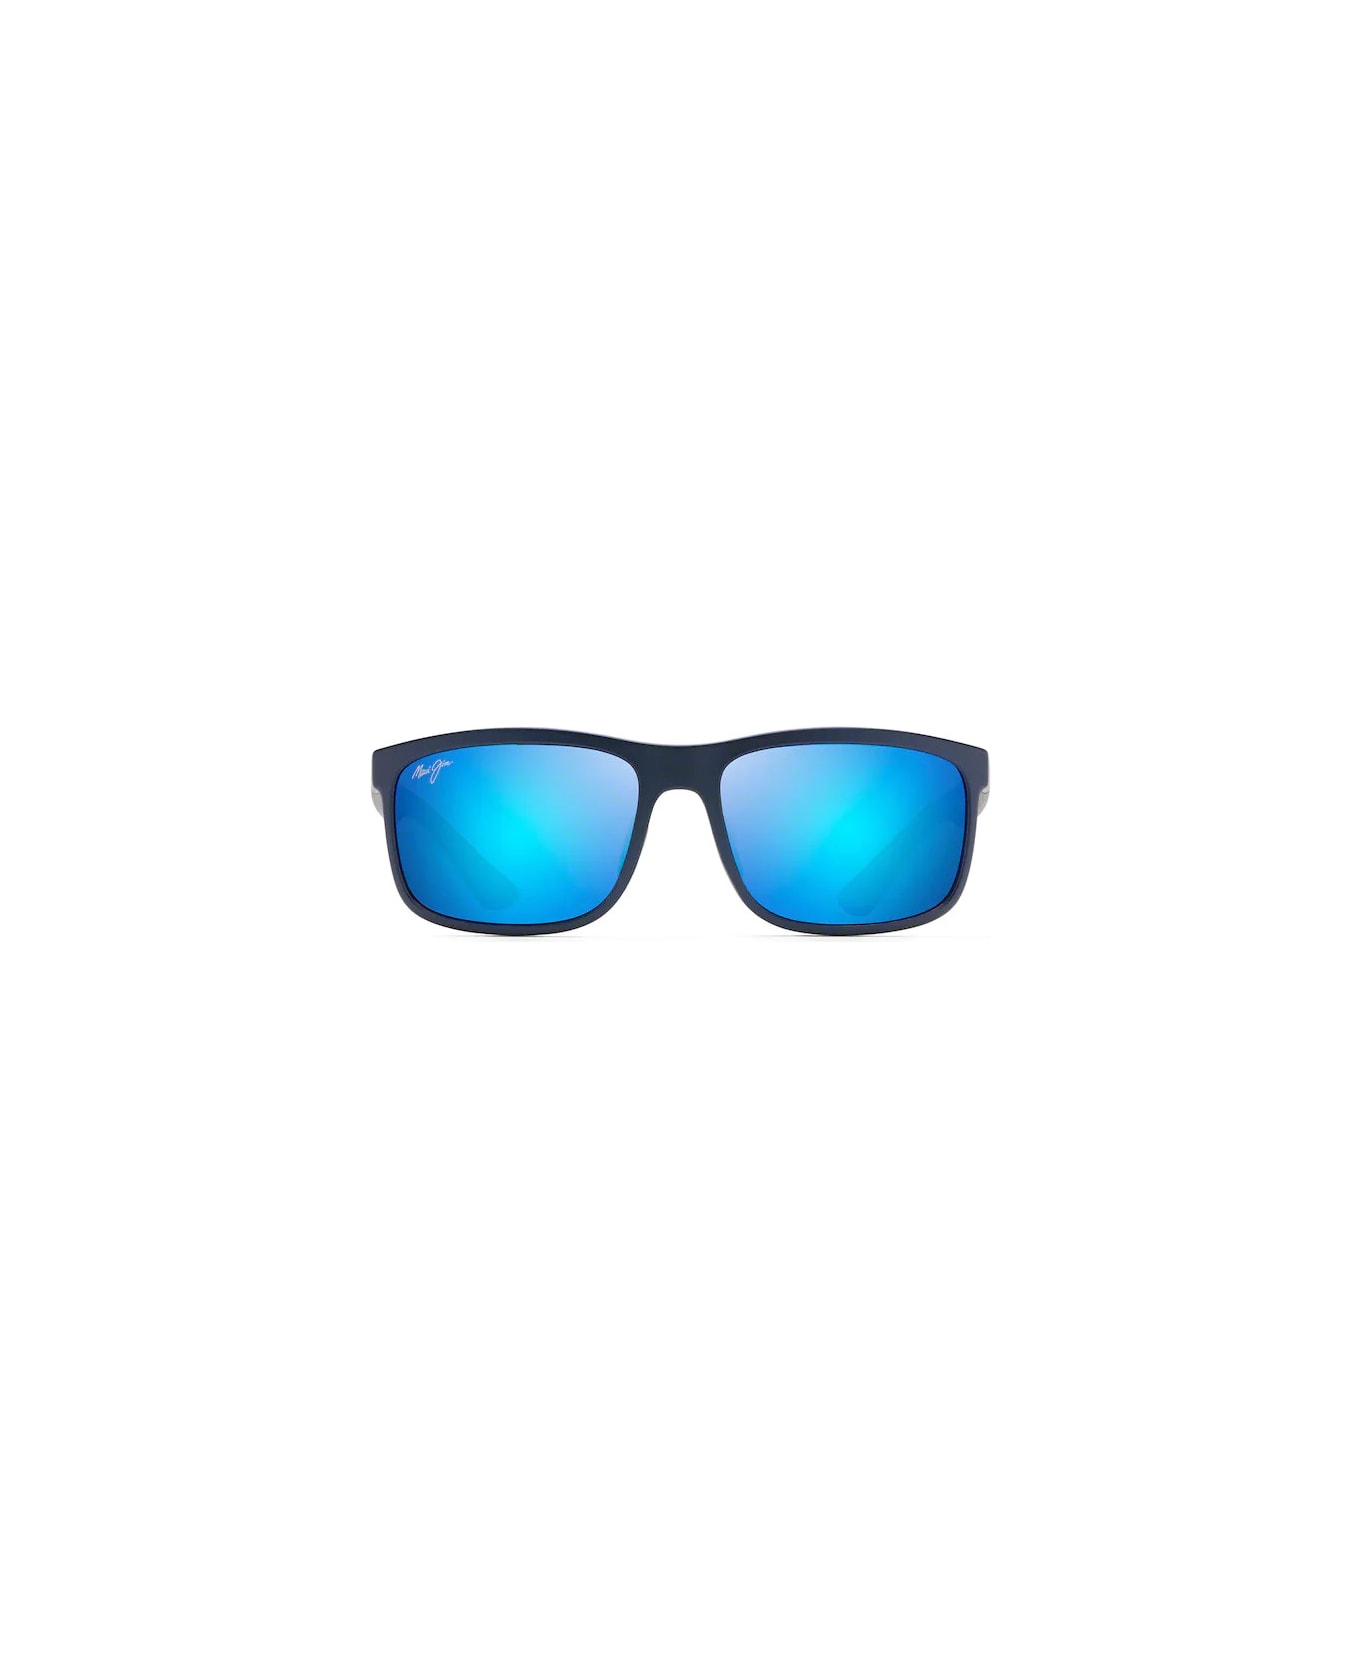 Maui Jim MJ449-03 Sunglasses - Blu